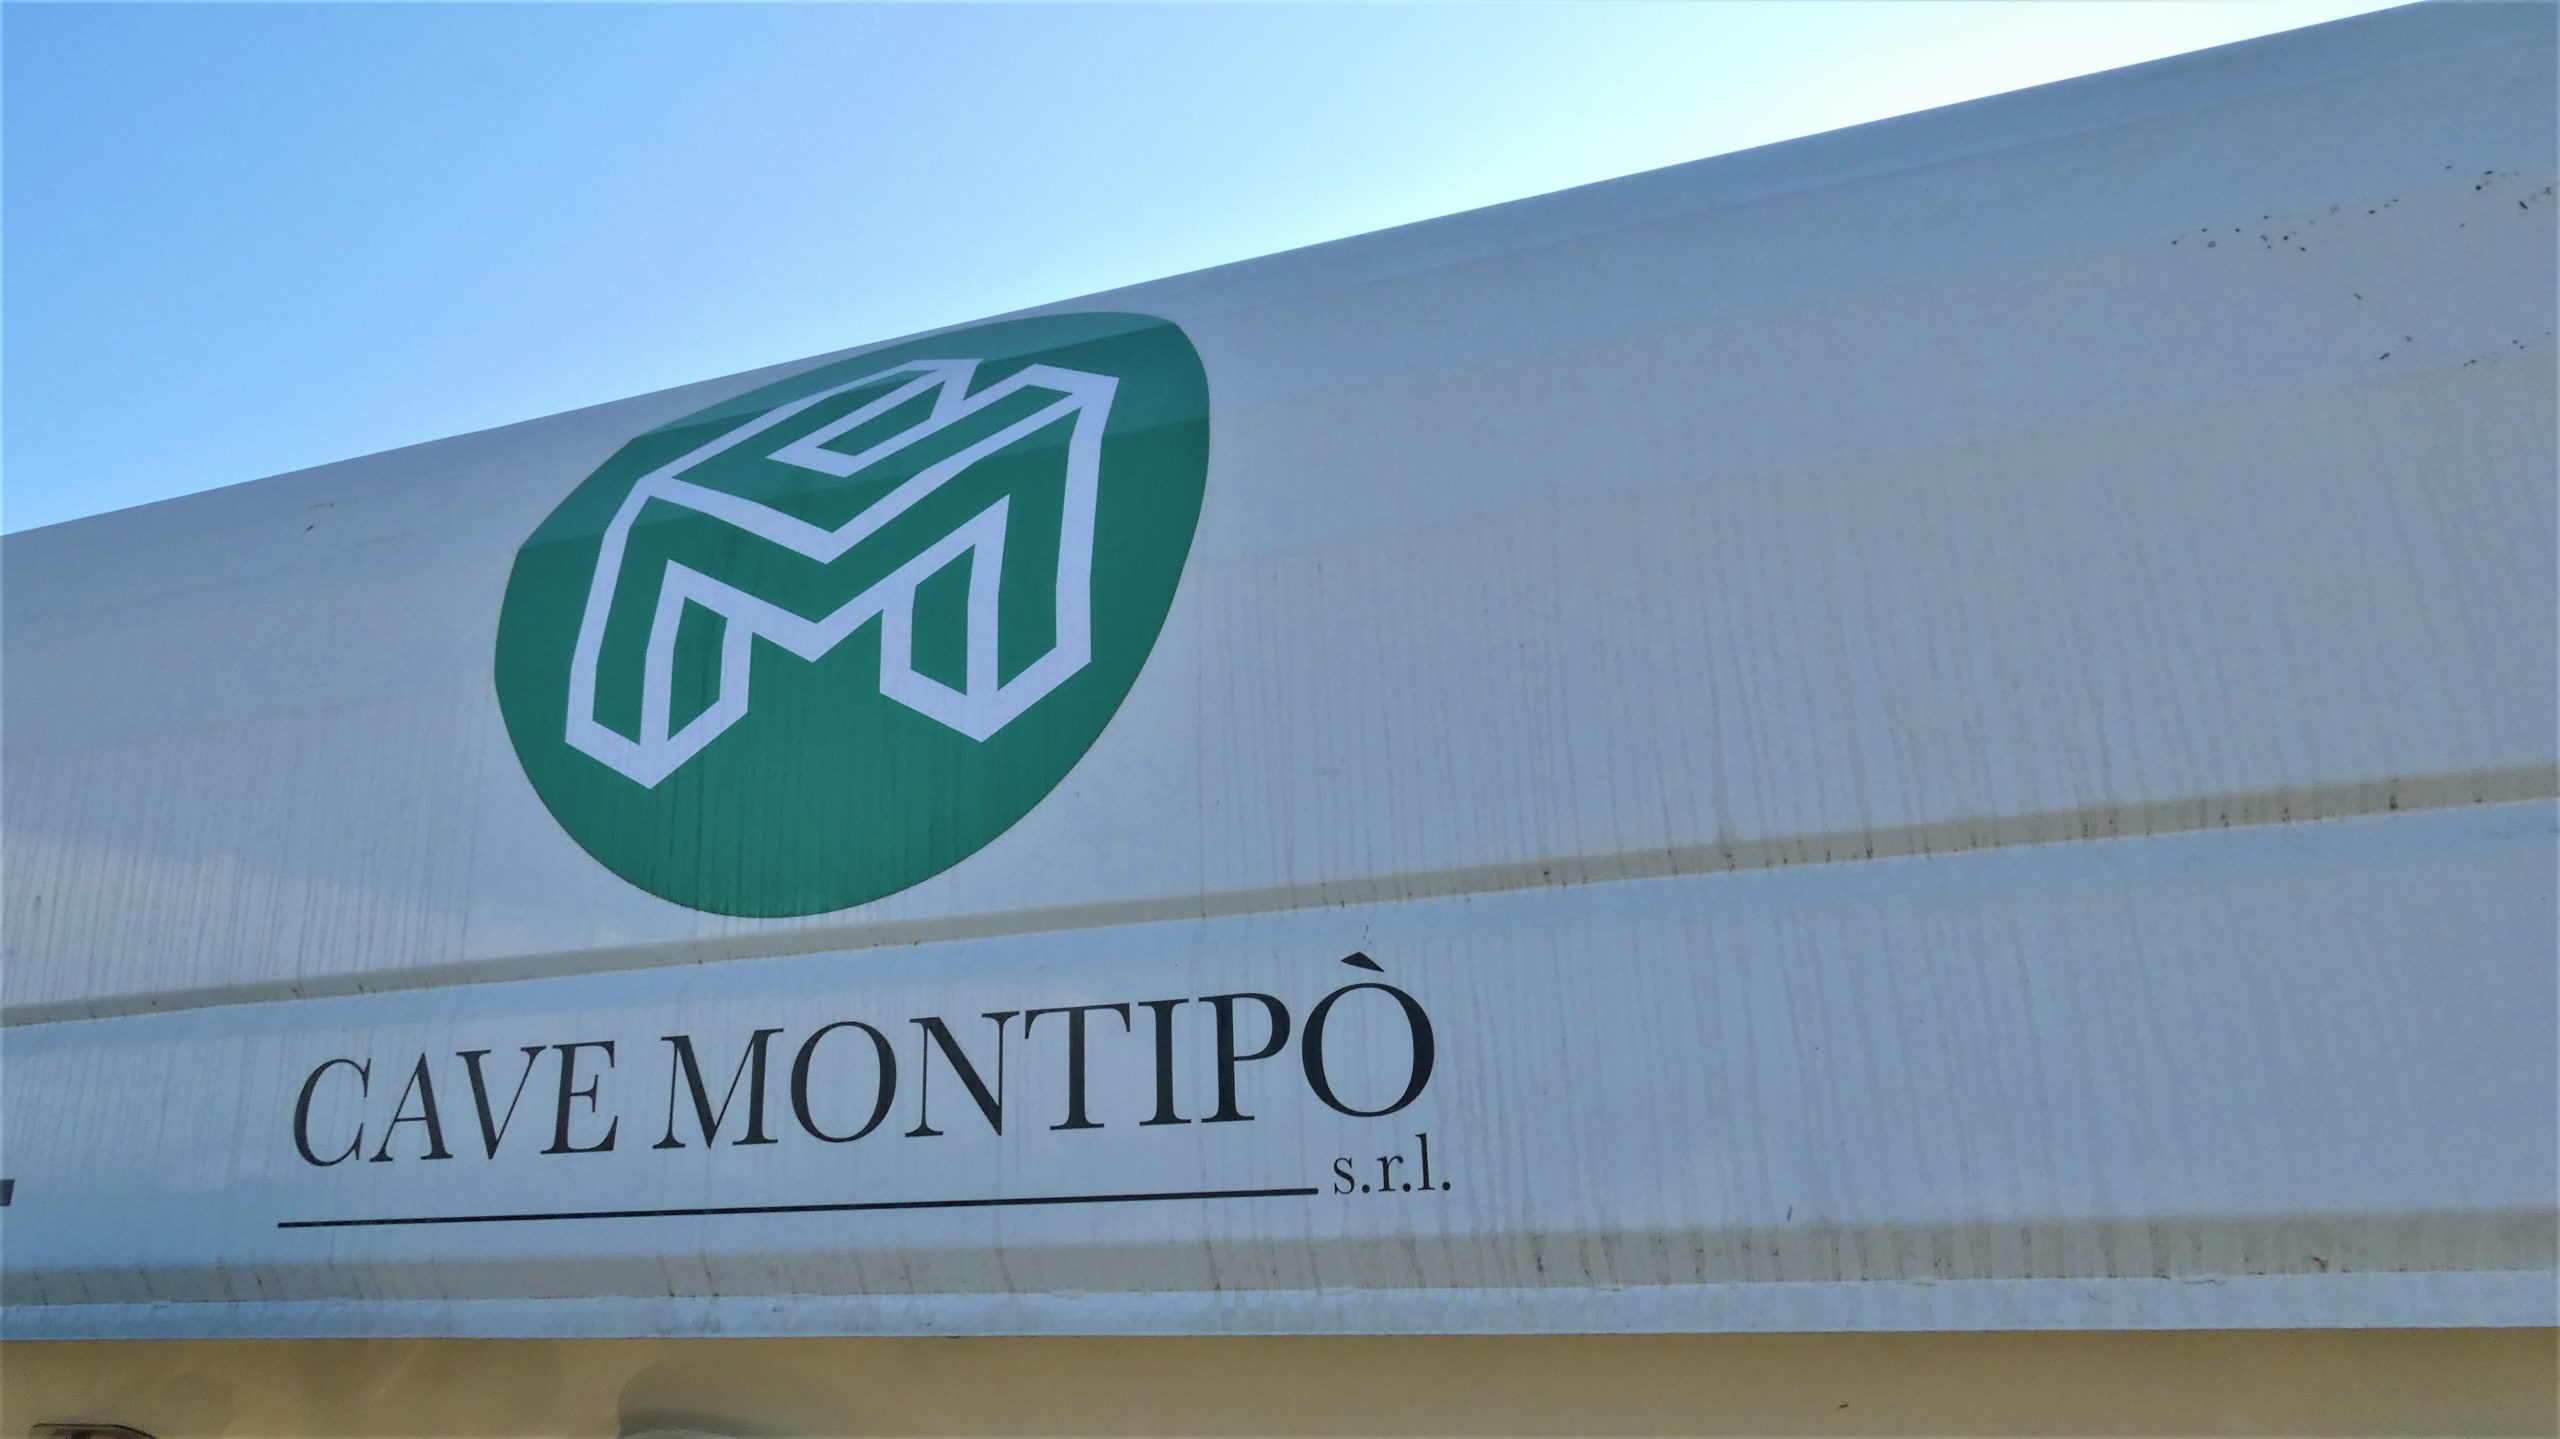 Cave Montipò è attiva nel settore estrattivo dal lontano 1960